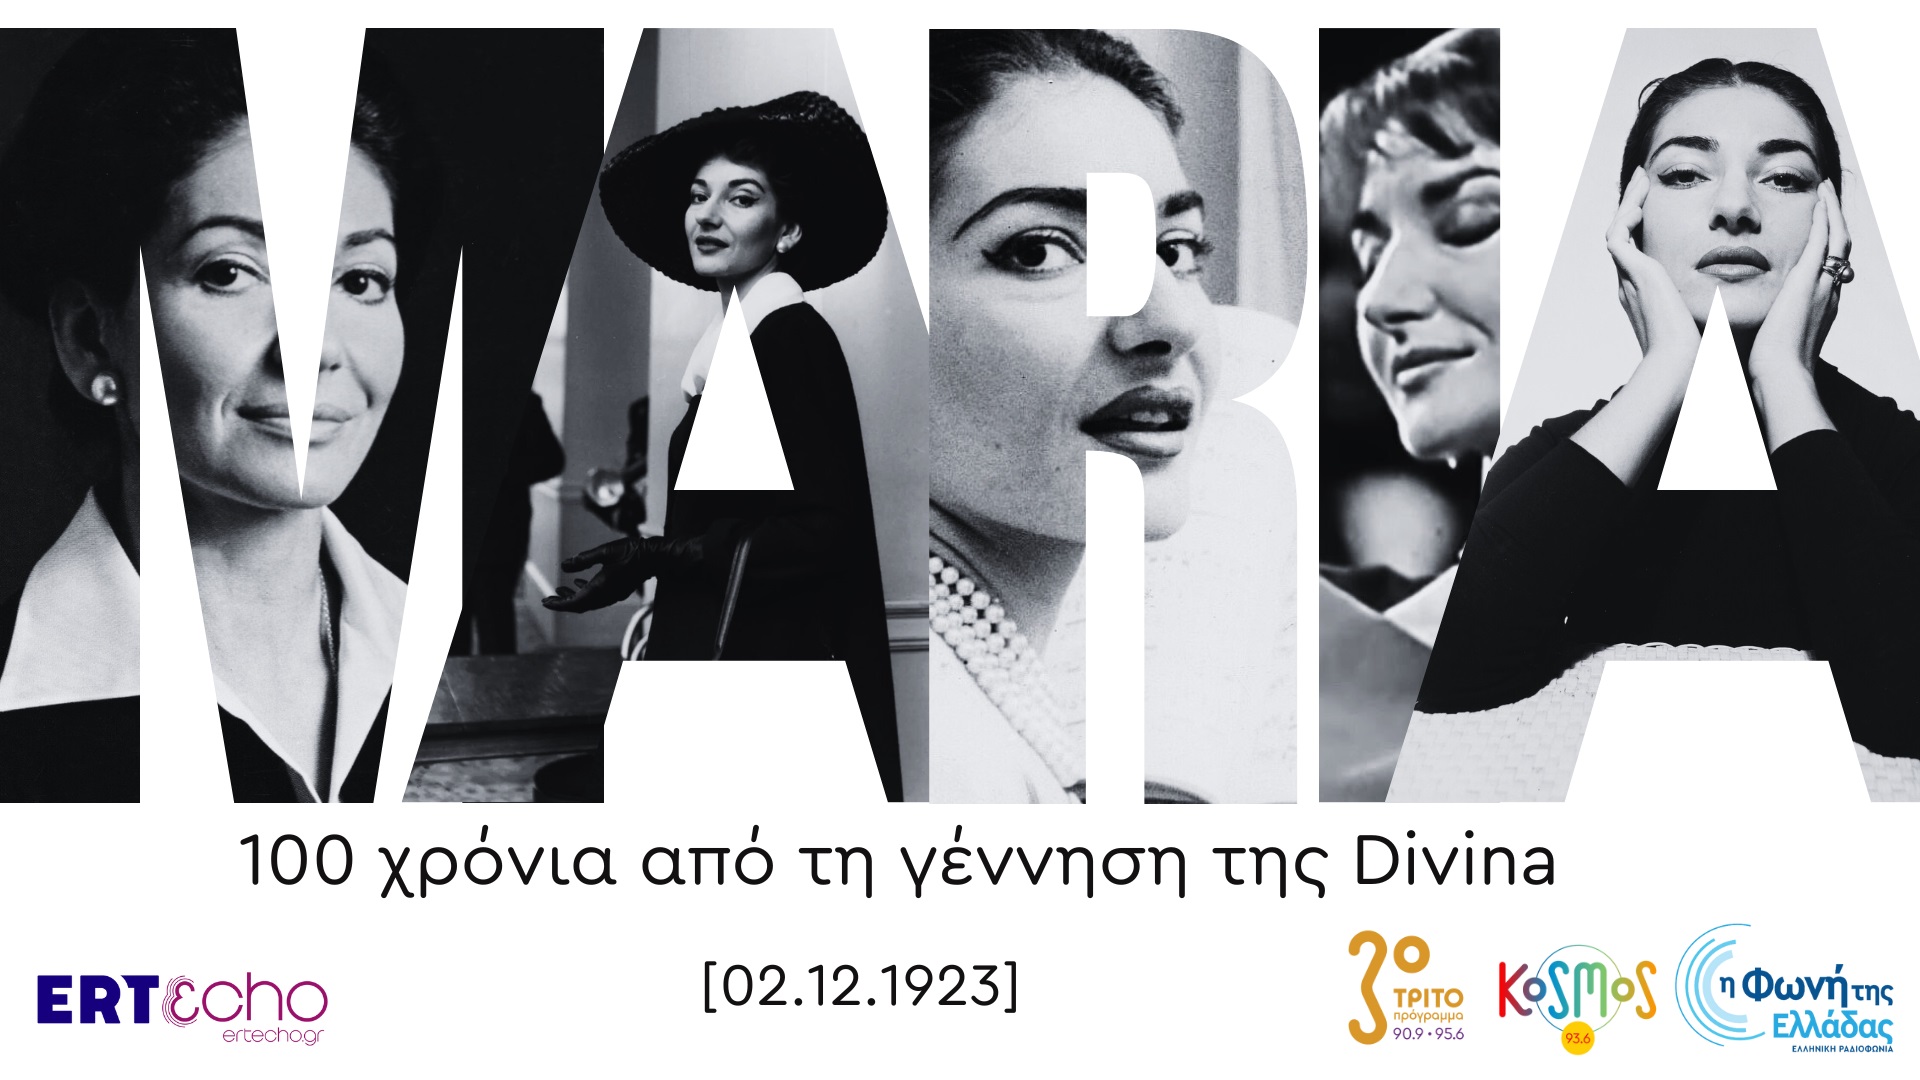 Ένας αιώνας από τη γέννηση της Μαρίας Κάλλας  στην Ελληνική Ραδιοφωνία και το ERTECHO